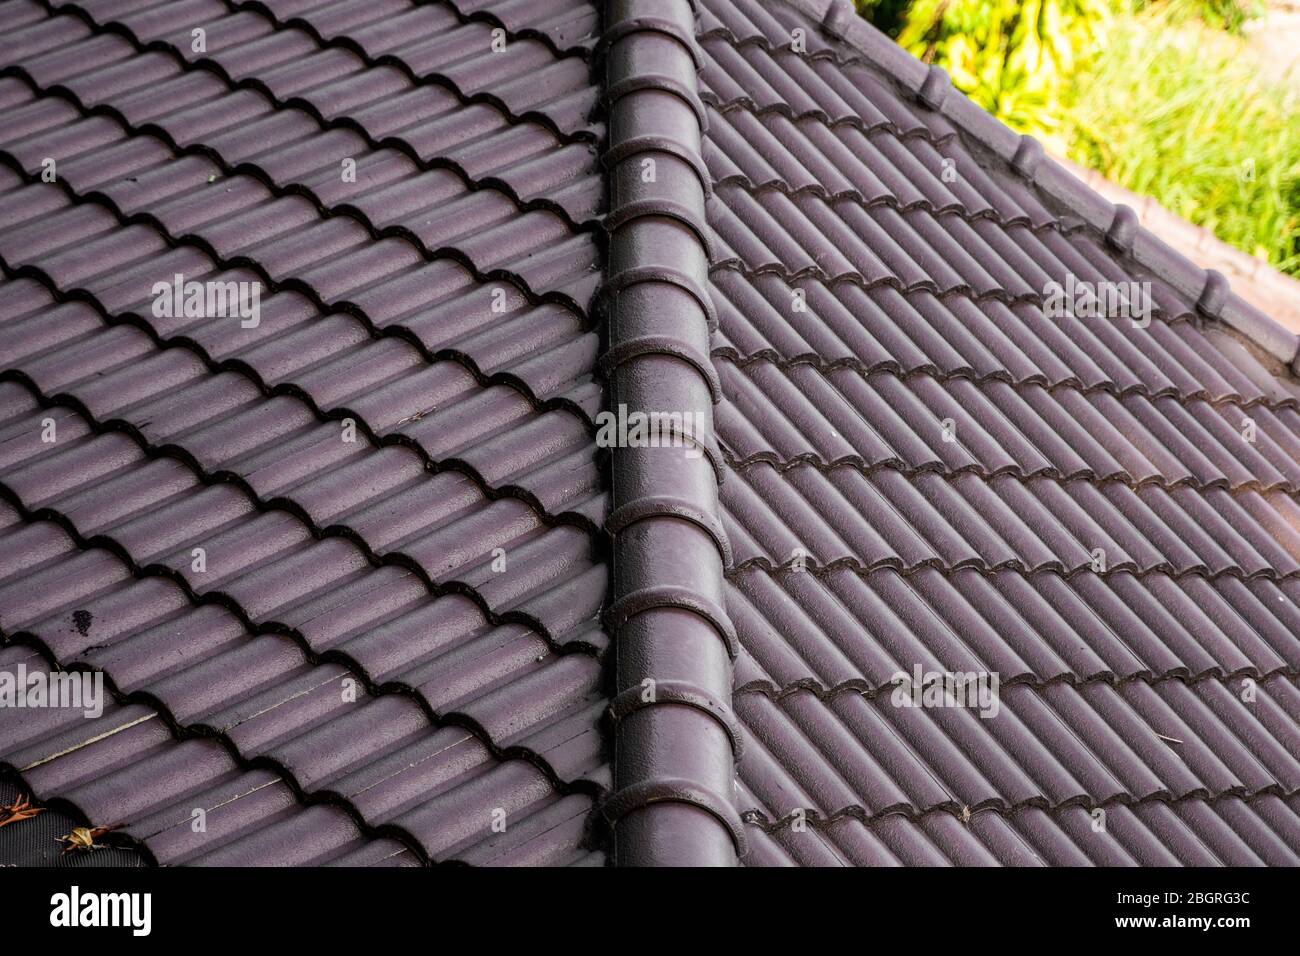 Toit en tuiles naturelles marron. Types modernes de matériaux de toiture. Toit de la maison, tuile de toit naturel contre le ciel bleu. Bâtiment. Banque D'Images